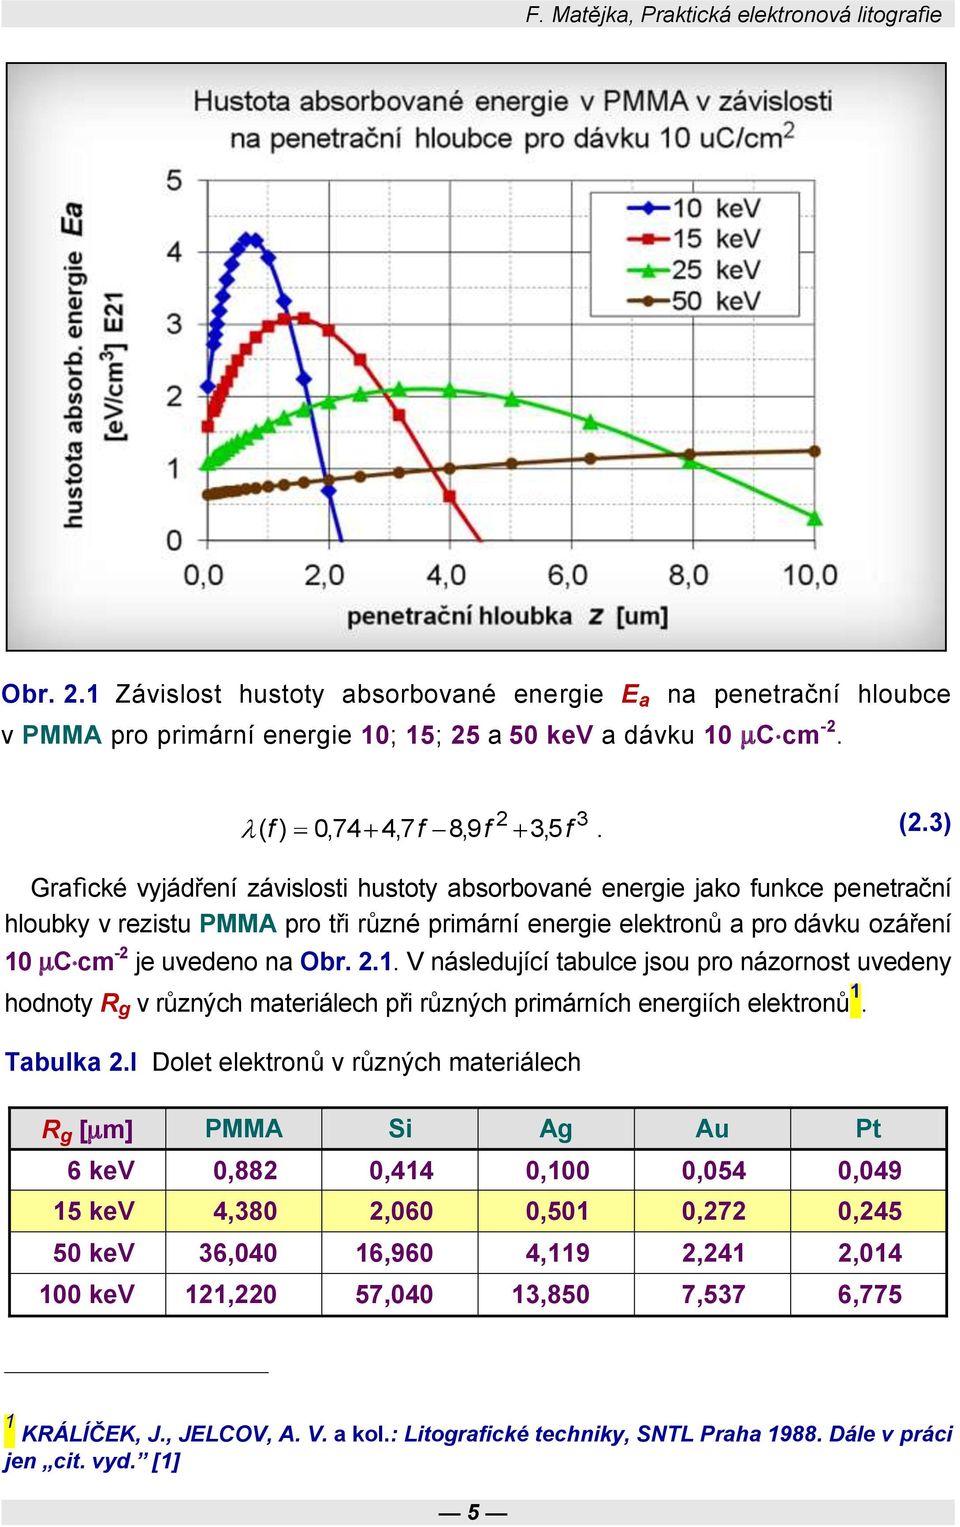 3) Grafické vyjádření závislosti hustoty absorbované energie jako funkce penetrační hloubky v rezistu PMMA pro tři různé primární energie elektronů a pro dávku ozáření 10 C cm -2 je uvedeno na Obr. 2.